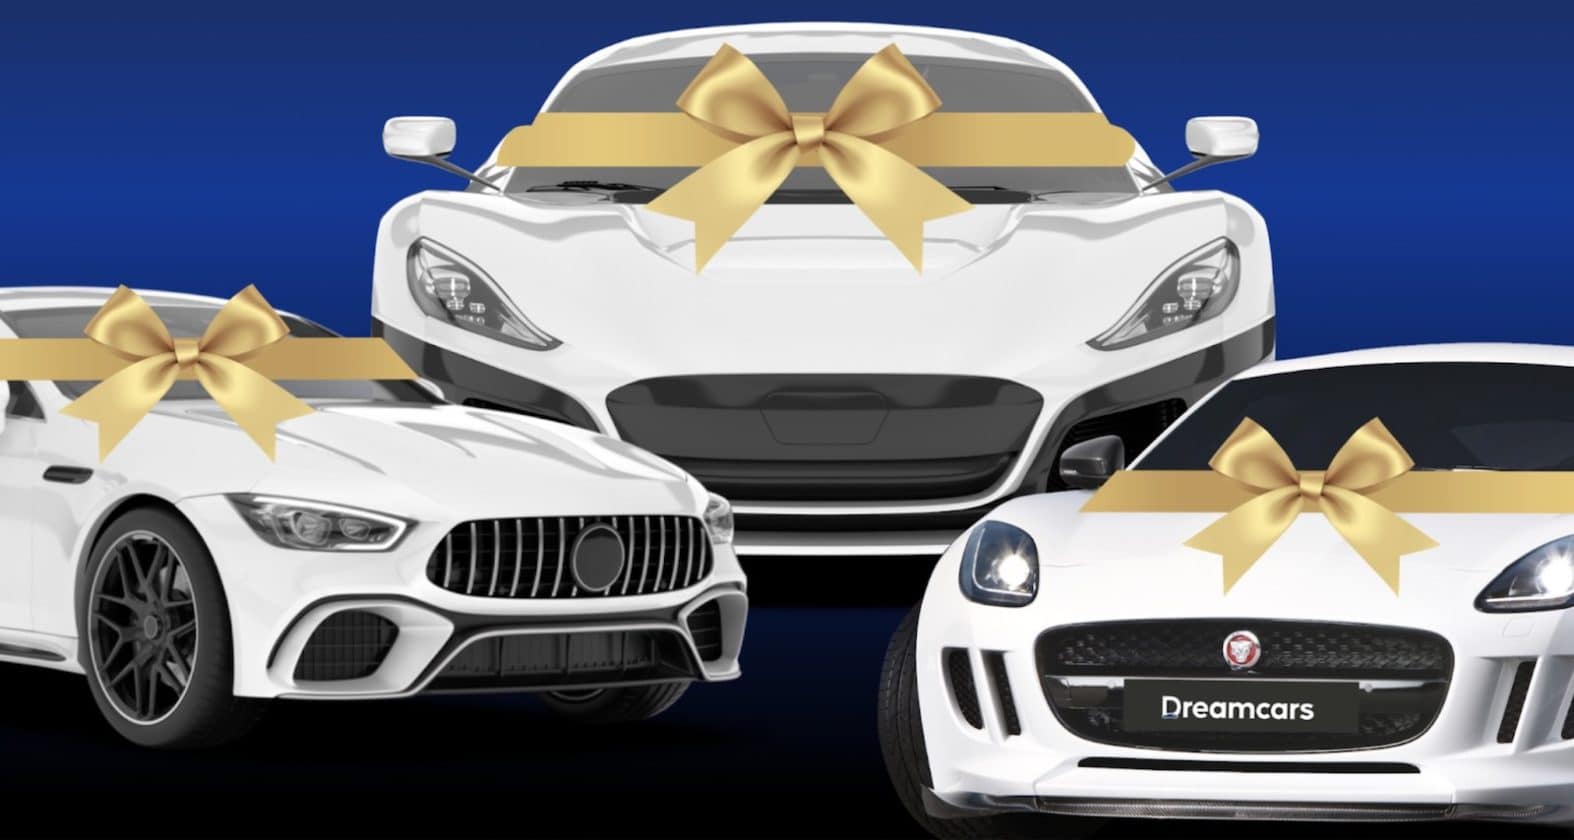 Dreamcars - O primeiro mercado de carros de luxo em blockchain